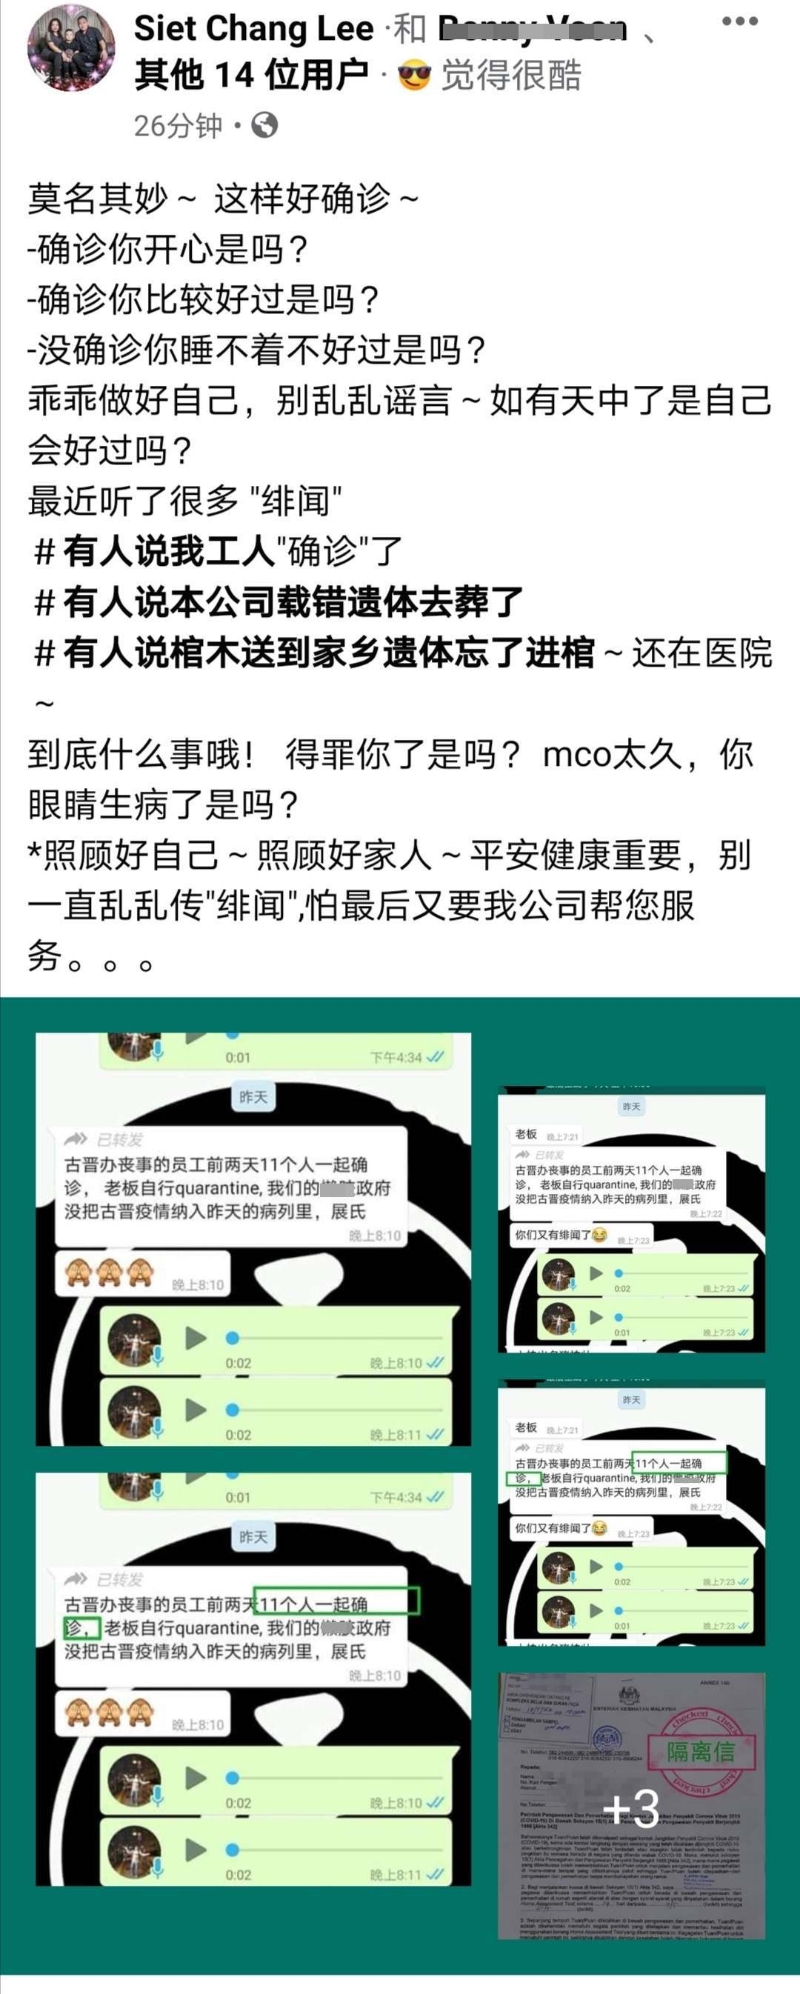 展丧事服务董事李细展在脸书针对近期对其公司的种种谣言慎重辟谣，并谴责造谣者居心叵测。